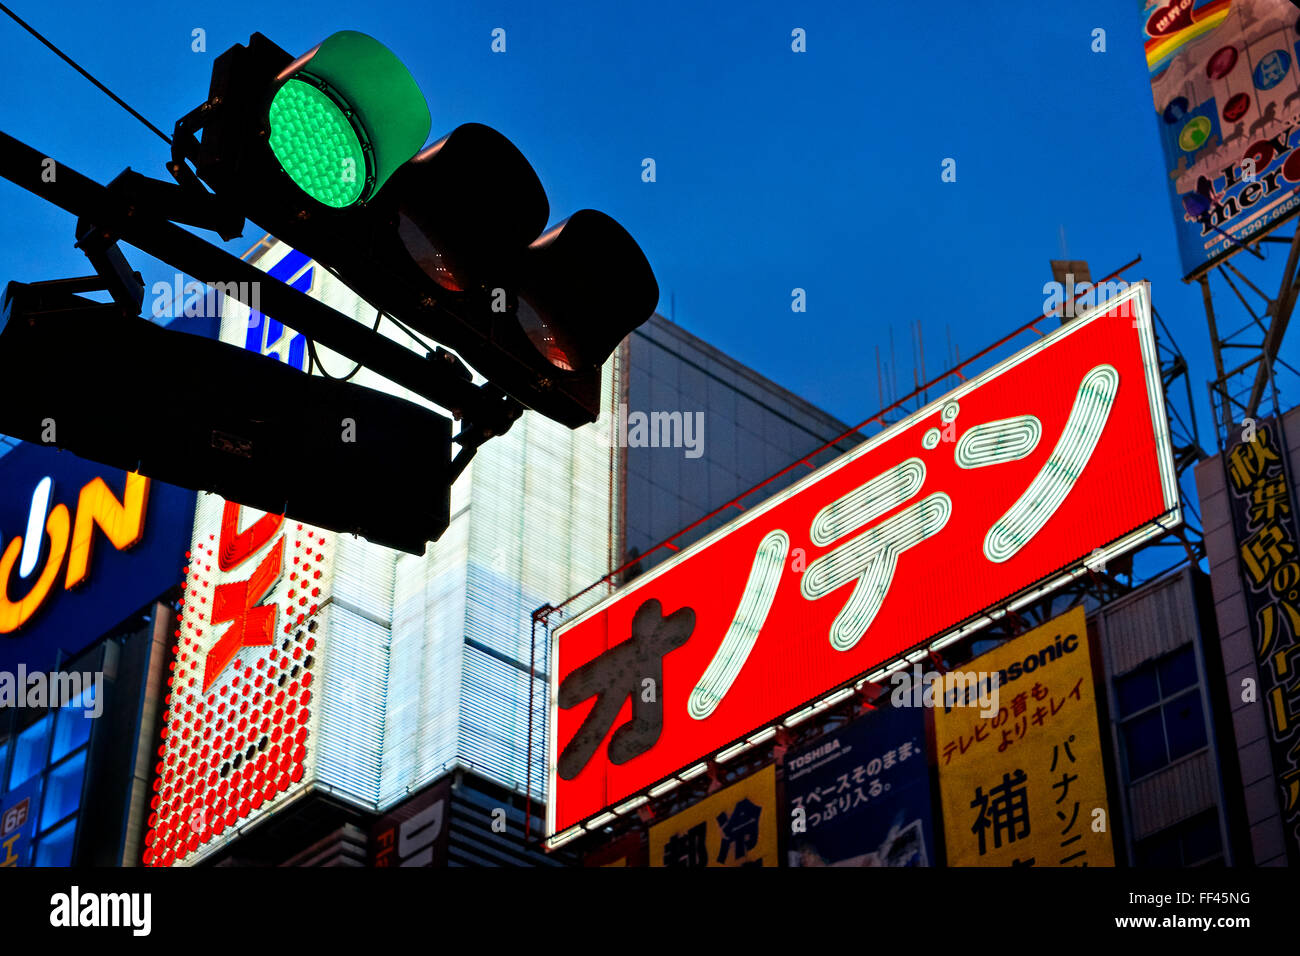 Japan, Honshu island, Kanto, Tokyo, signs at night. Stock Photo